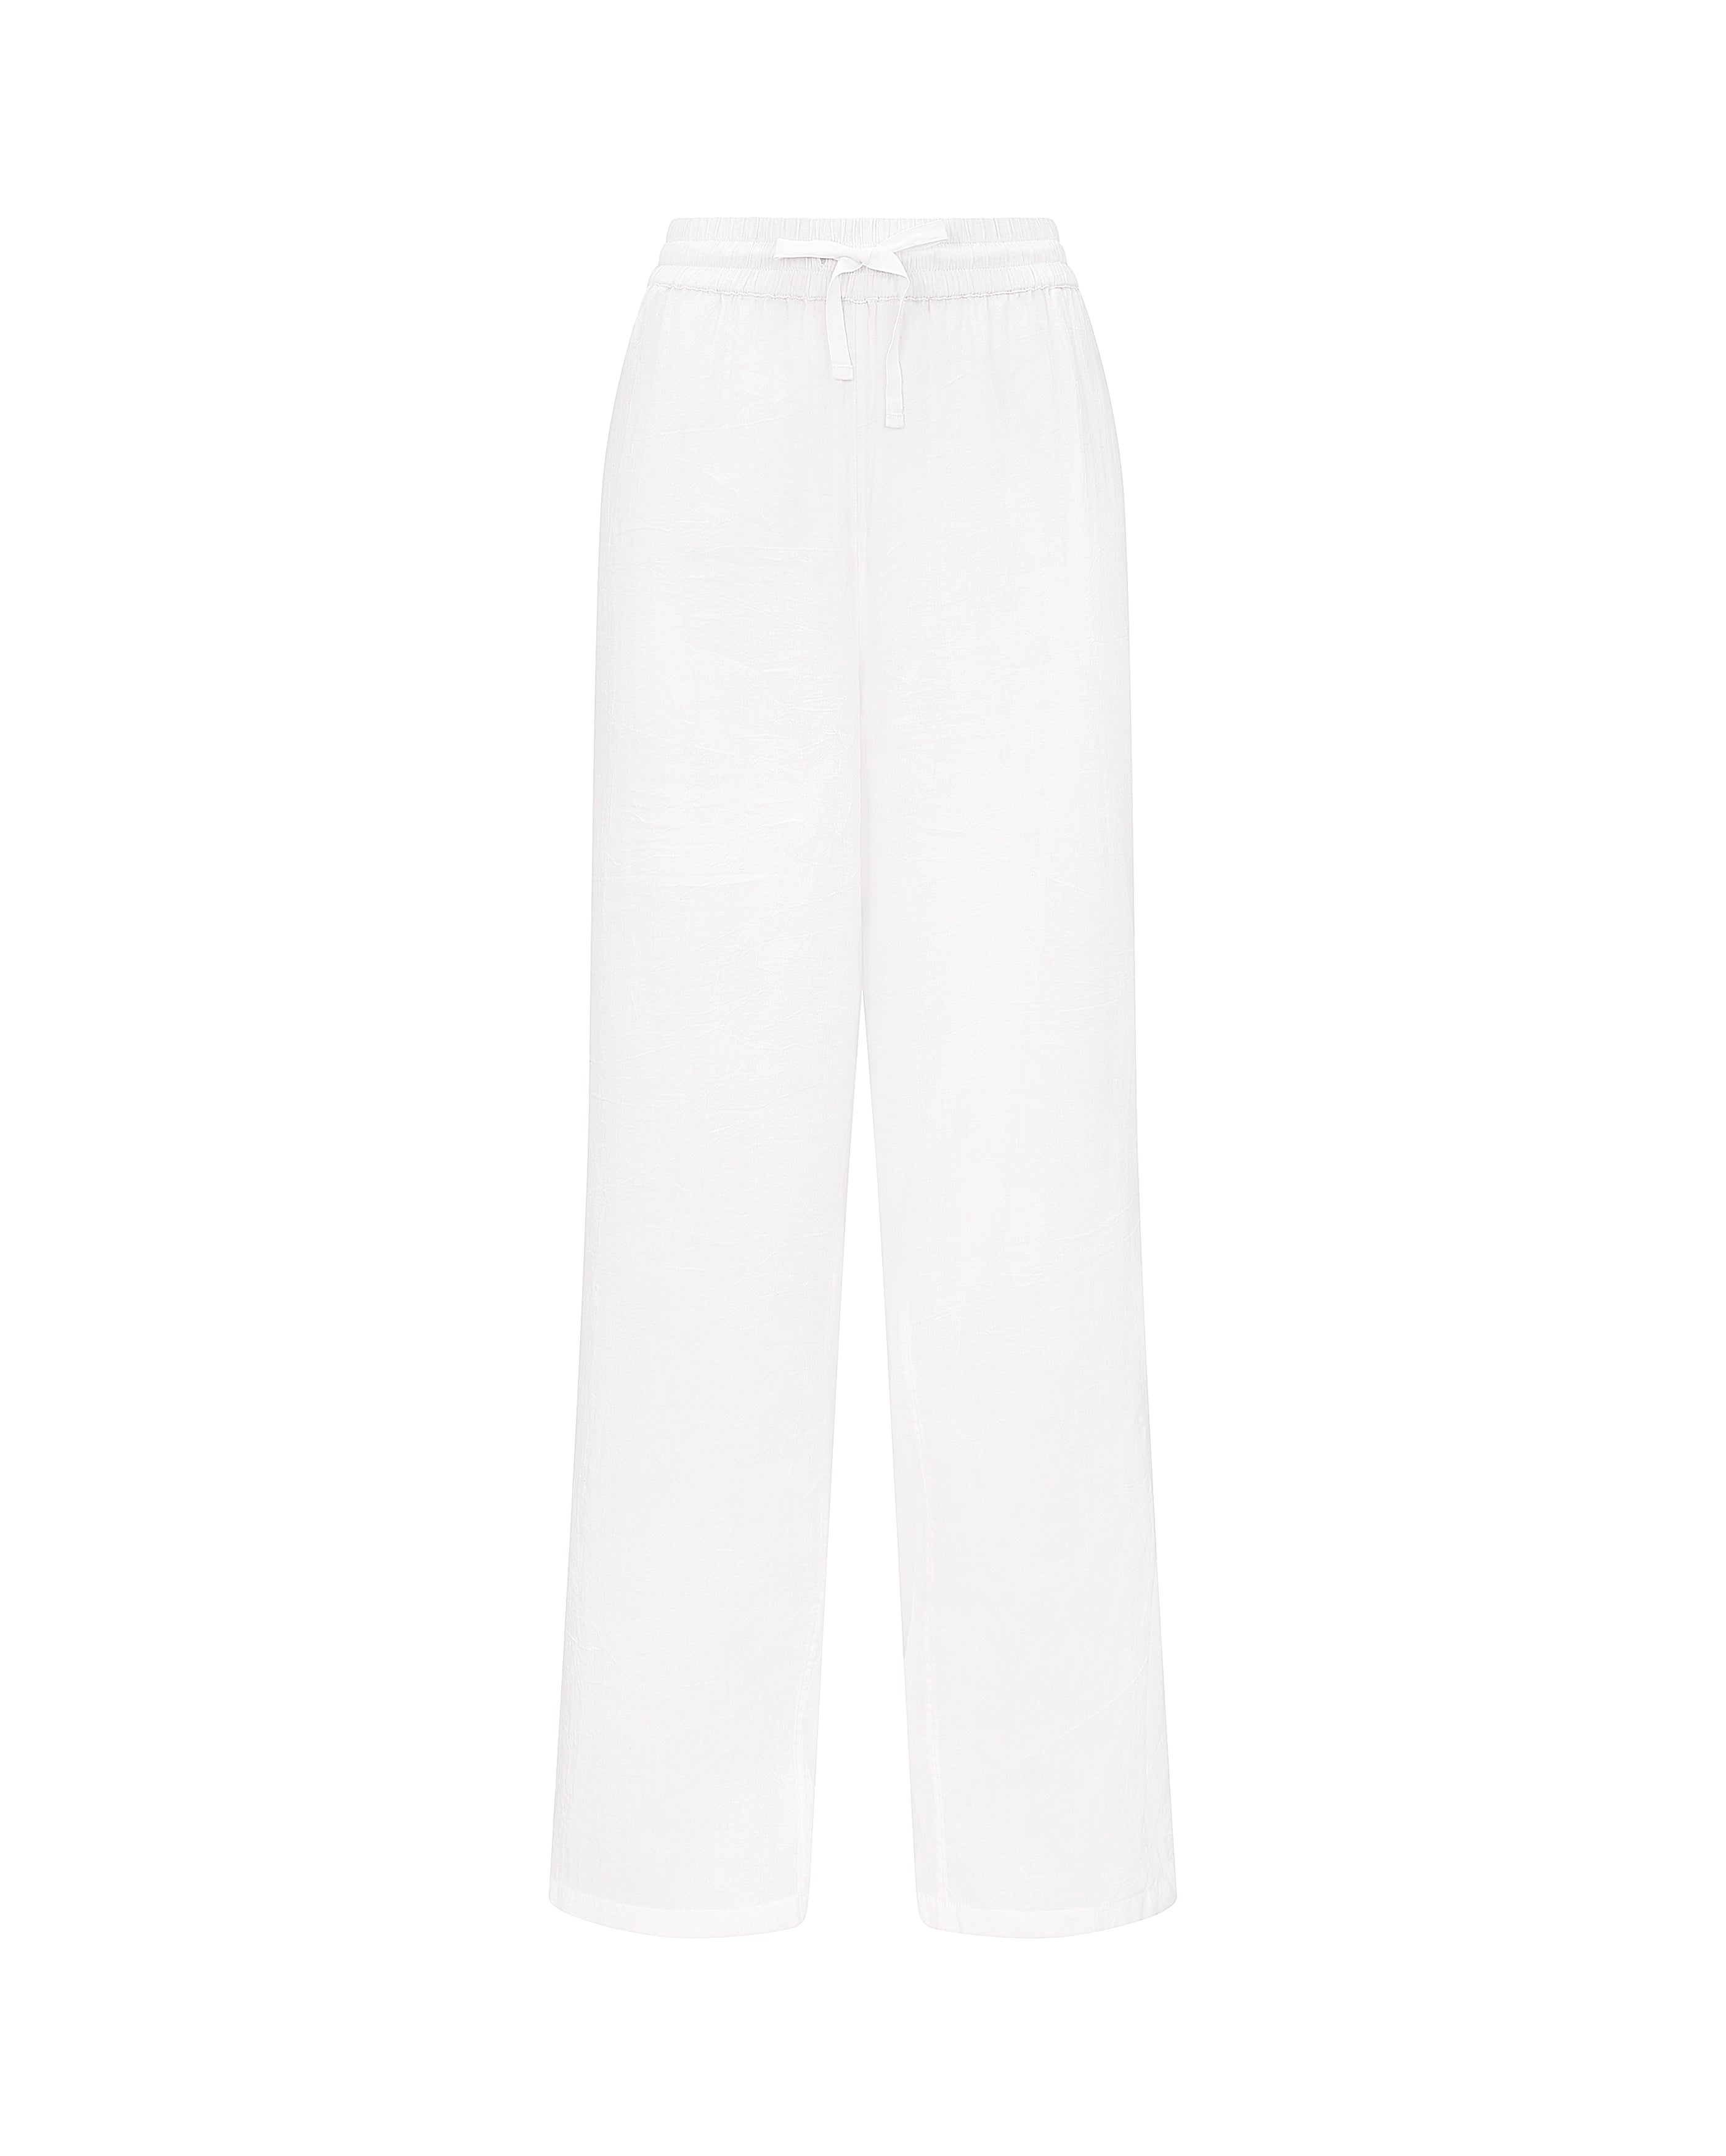 Nudea Women's The Classic Trouser - Cotton White